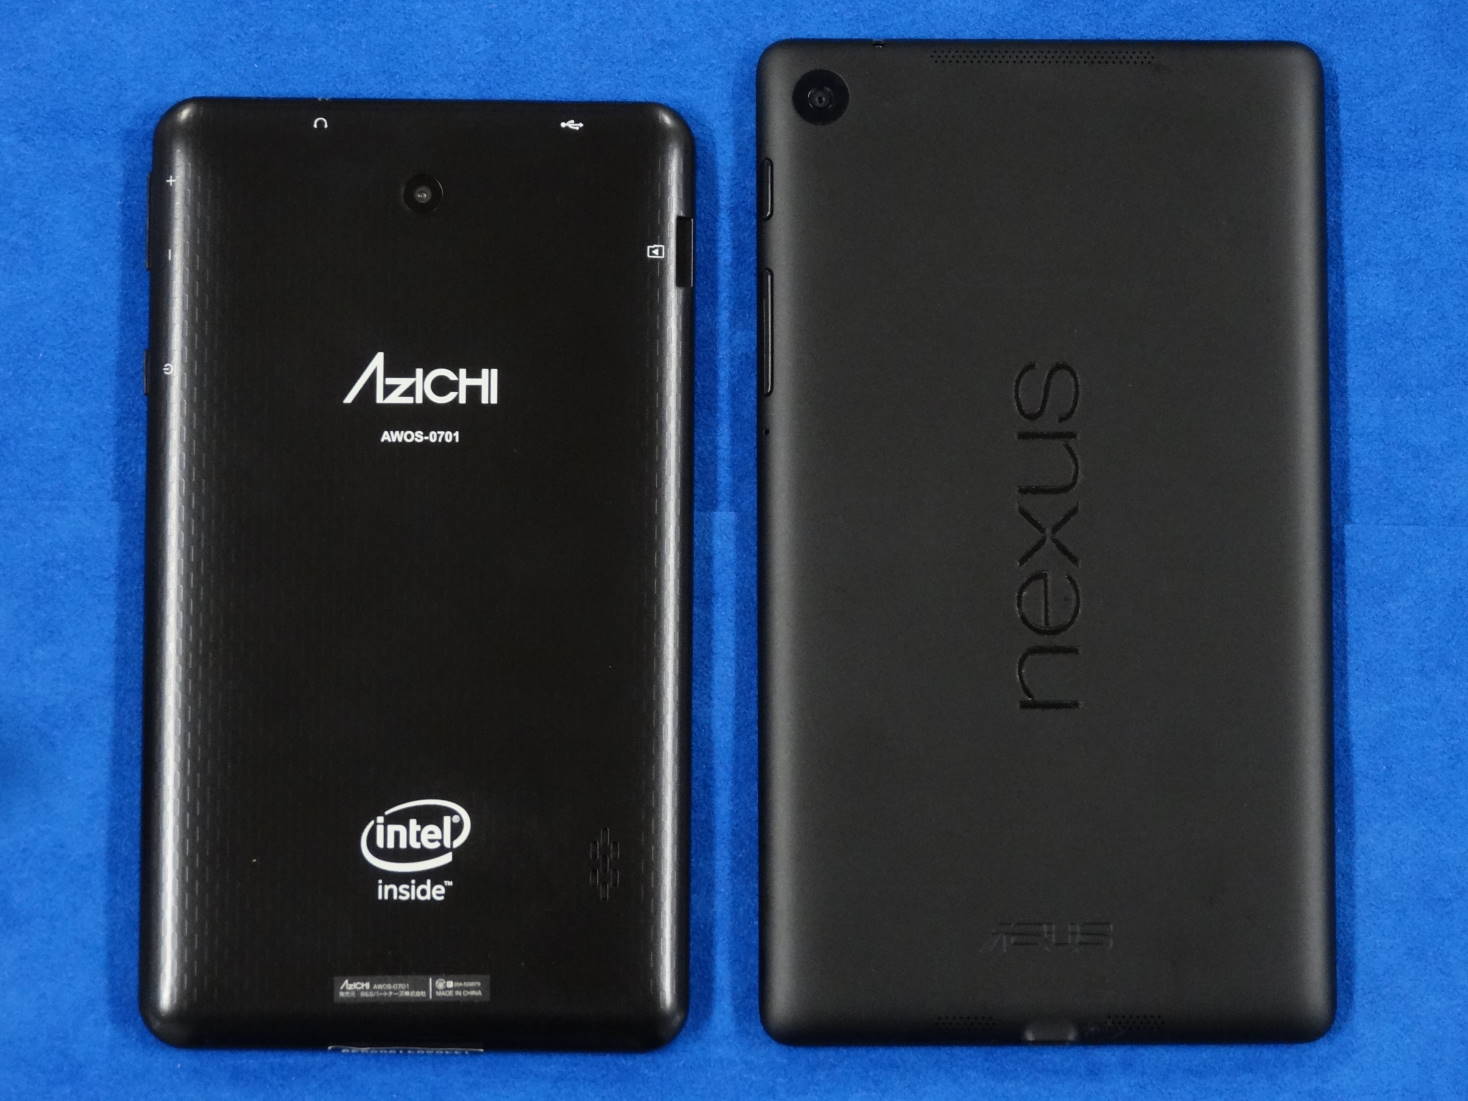 ΛzICHI AWOS-0701 と Nexus 7(2013) の裏面